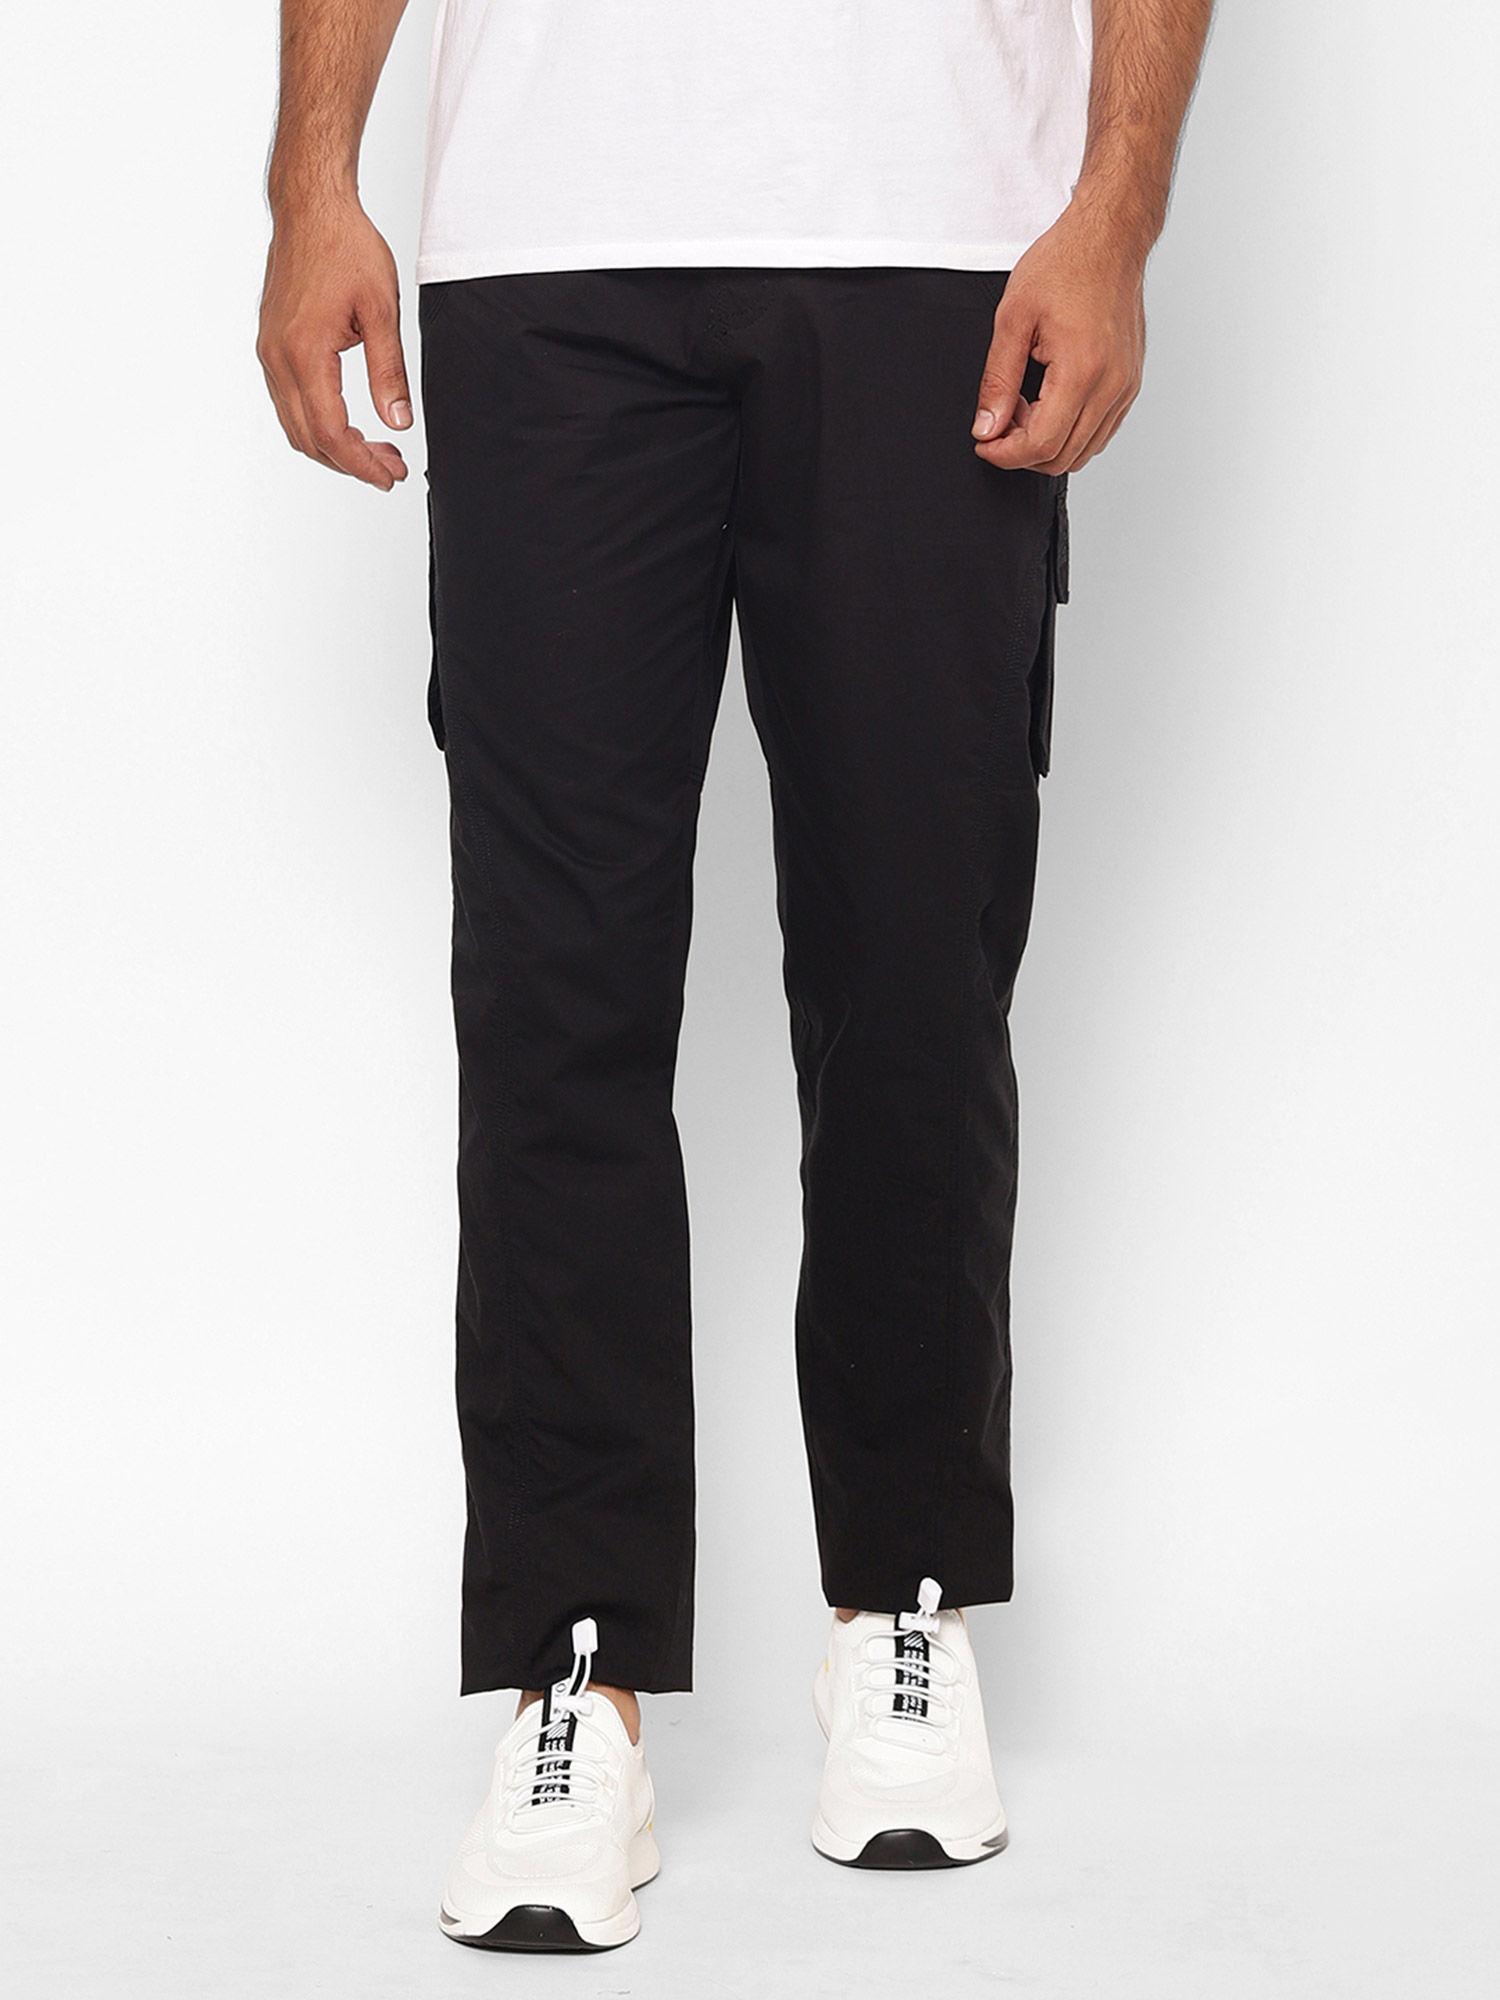 men's-black-solid-cotton-cargo-pant